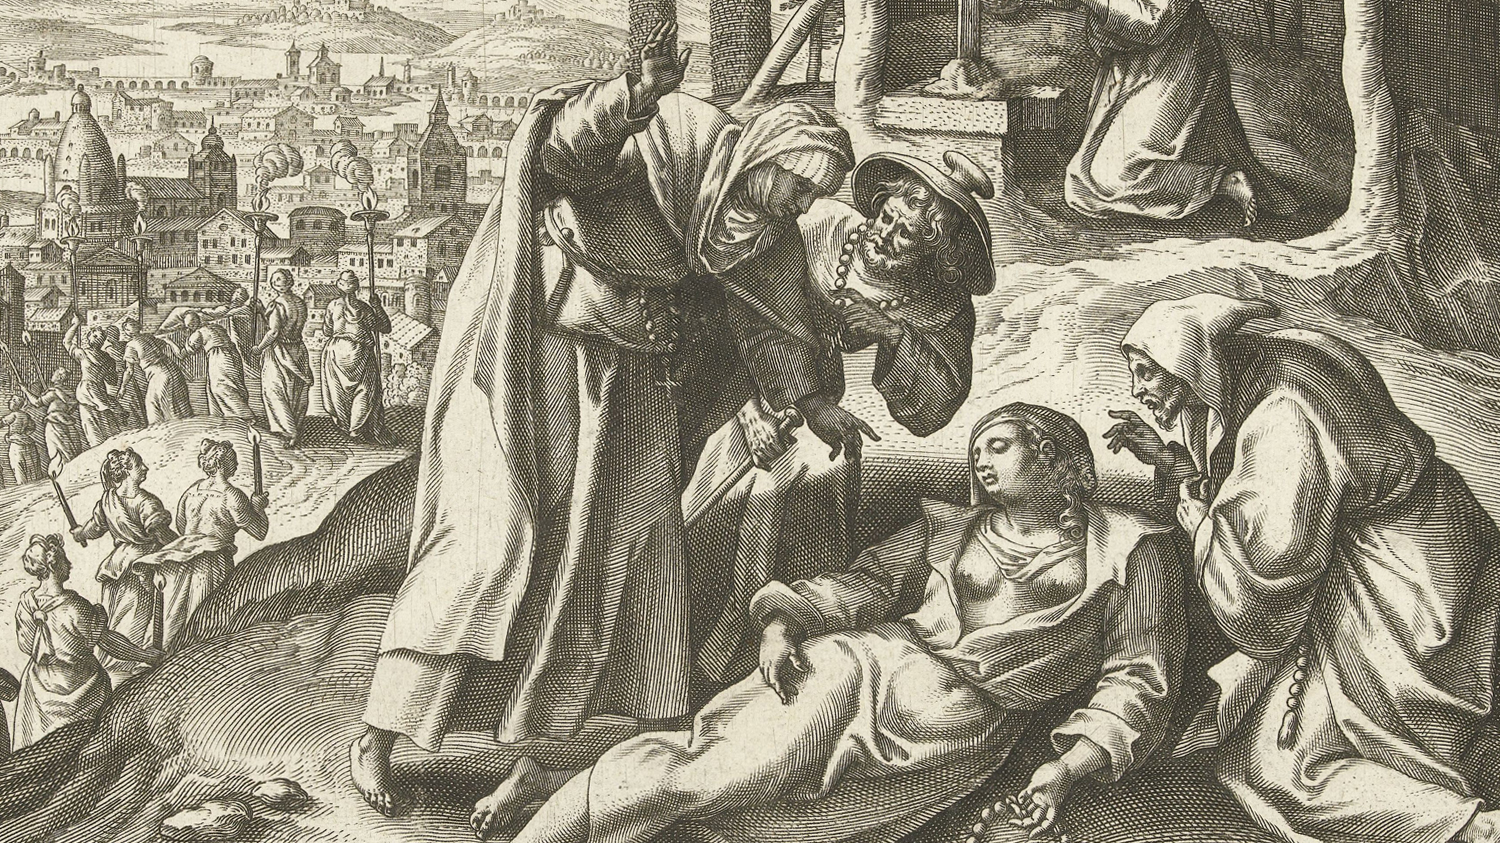 Szent Pelágia felhagy a bűnös élettel (forrás: Wikipedia)